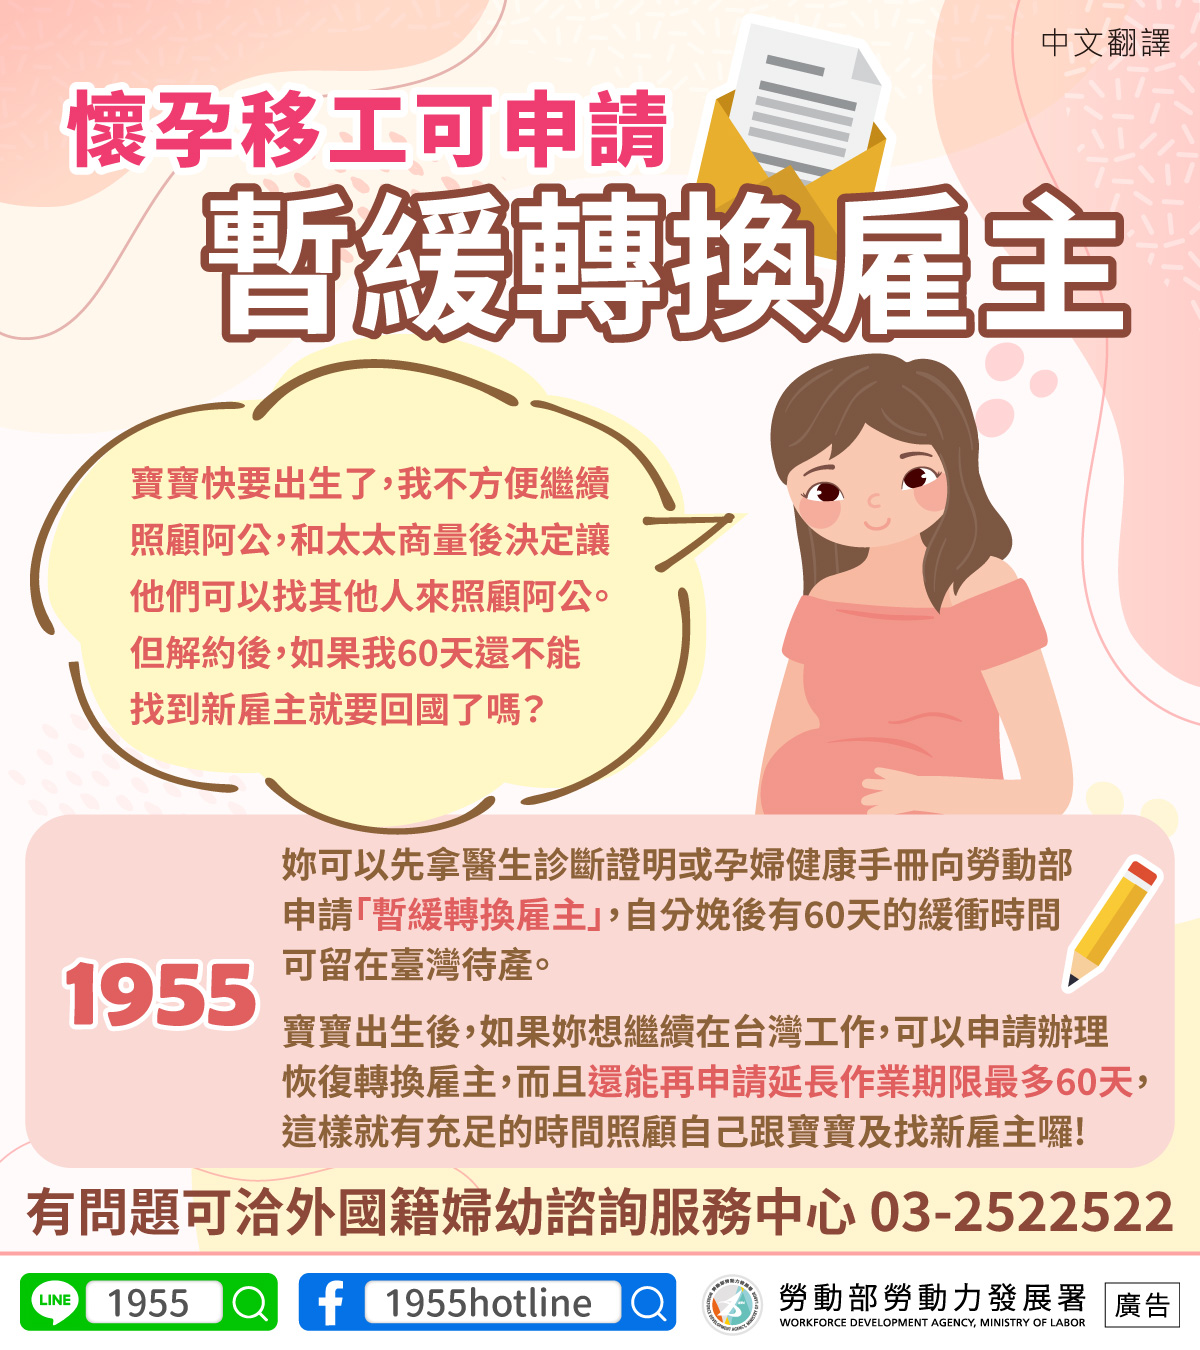 懷孕移工可申請暫緩轉換雇主-中文翻譯.jpg